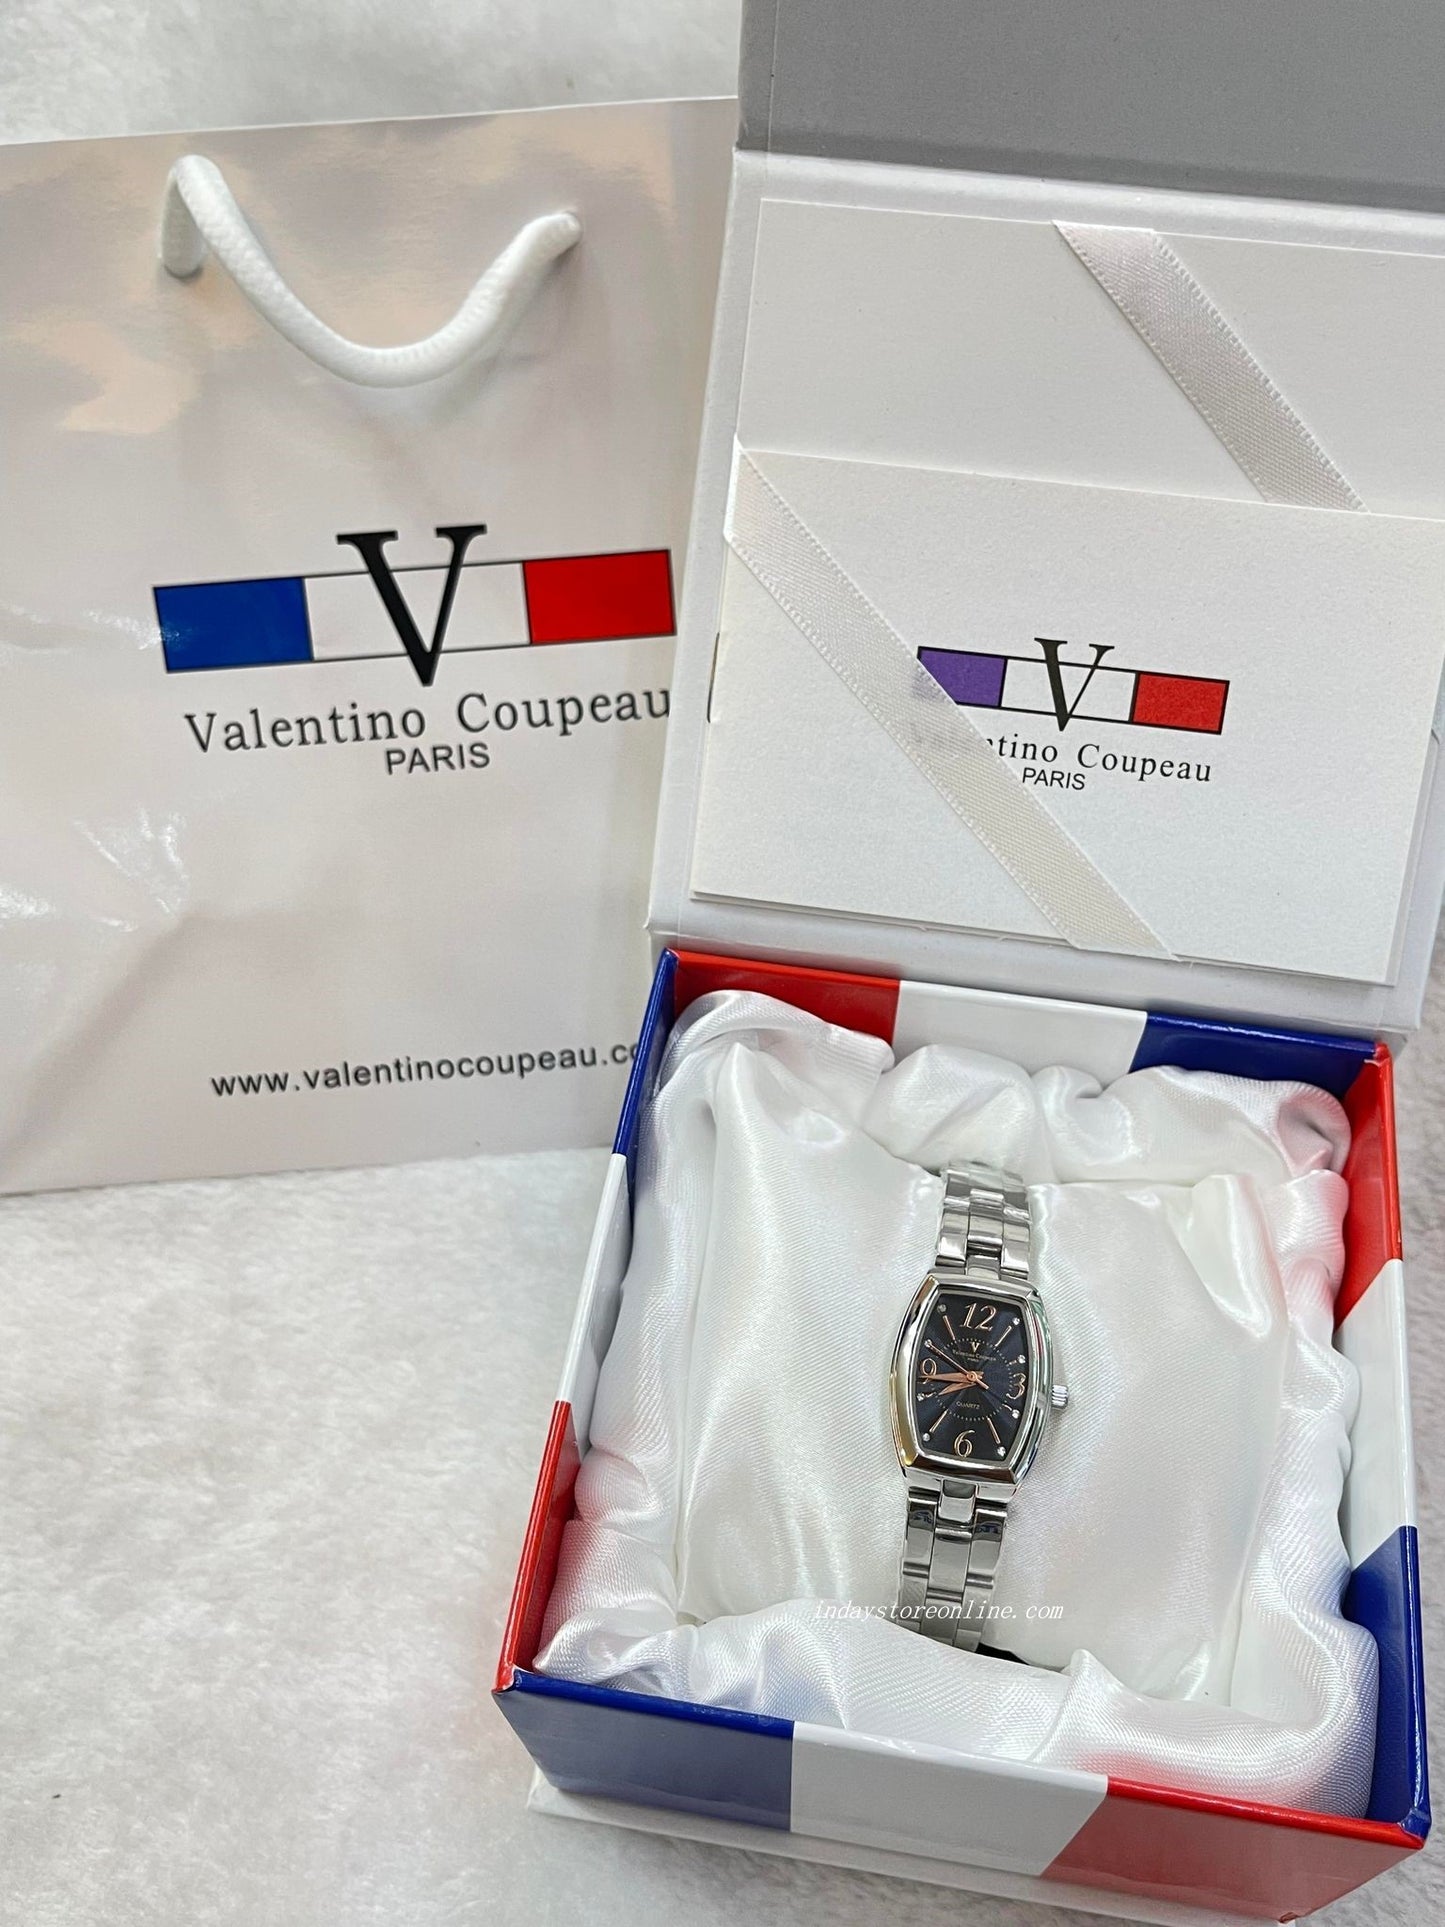 范倫鐵諾 古柏 Valentino Coupeau Women's Watch 61268G-2